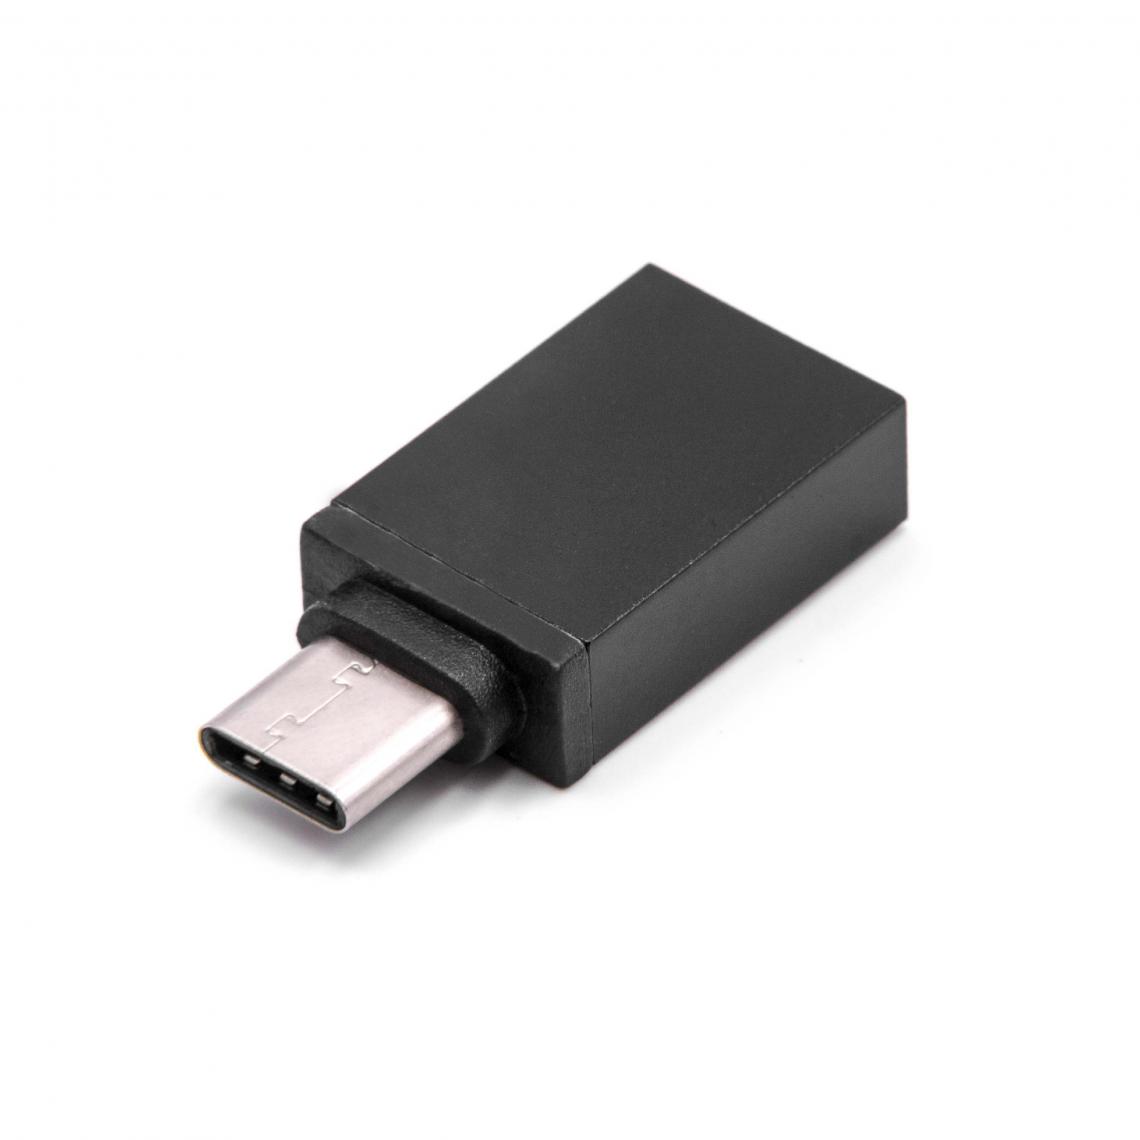 Vhbw - vhbw Adaptateur USB type C mâle vers USB 3.0 femelle pour smartphone, ordinateur portable - Adaptateur haute vitesse OTG-Highspeed, noir - Accessoires alimentation